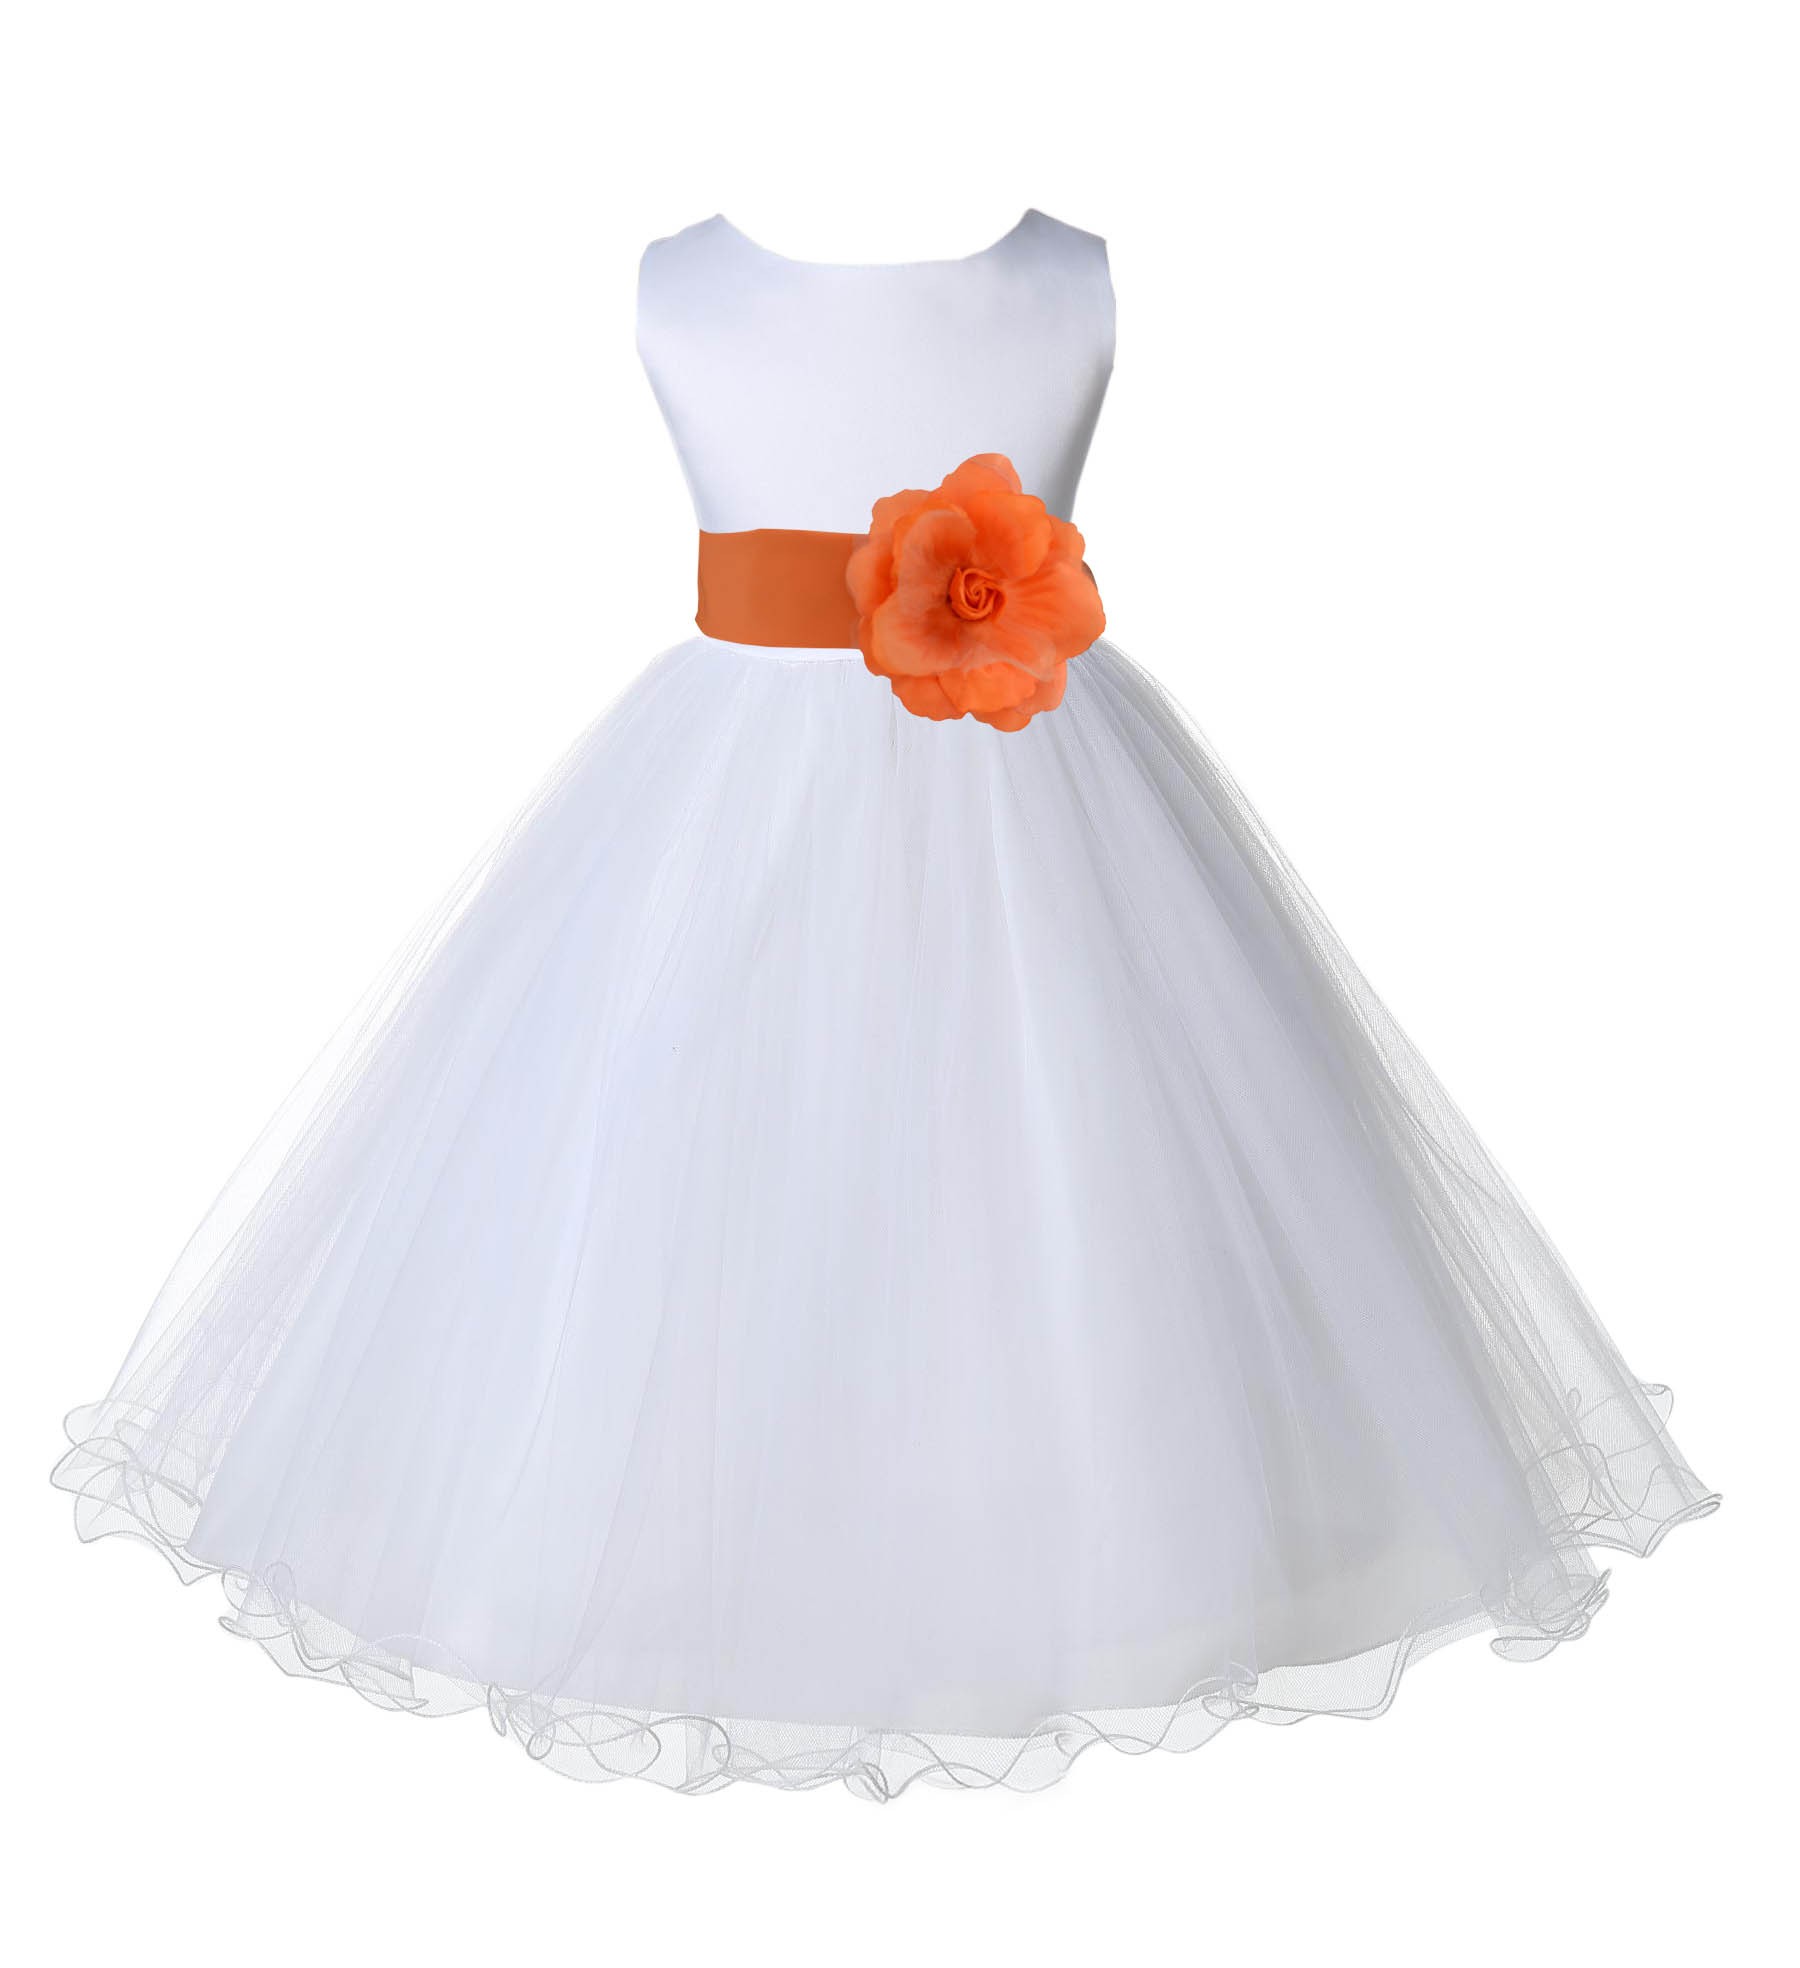 White/Orange Tulle Rattail Edge Flower Girl Dress Wedding Bridal 829S